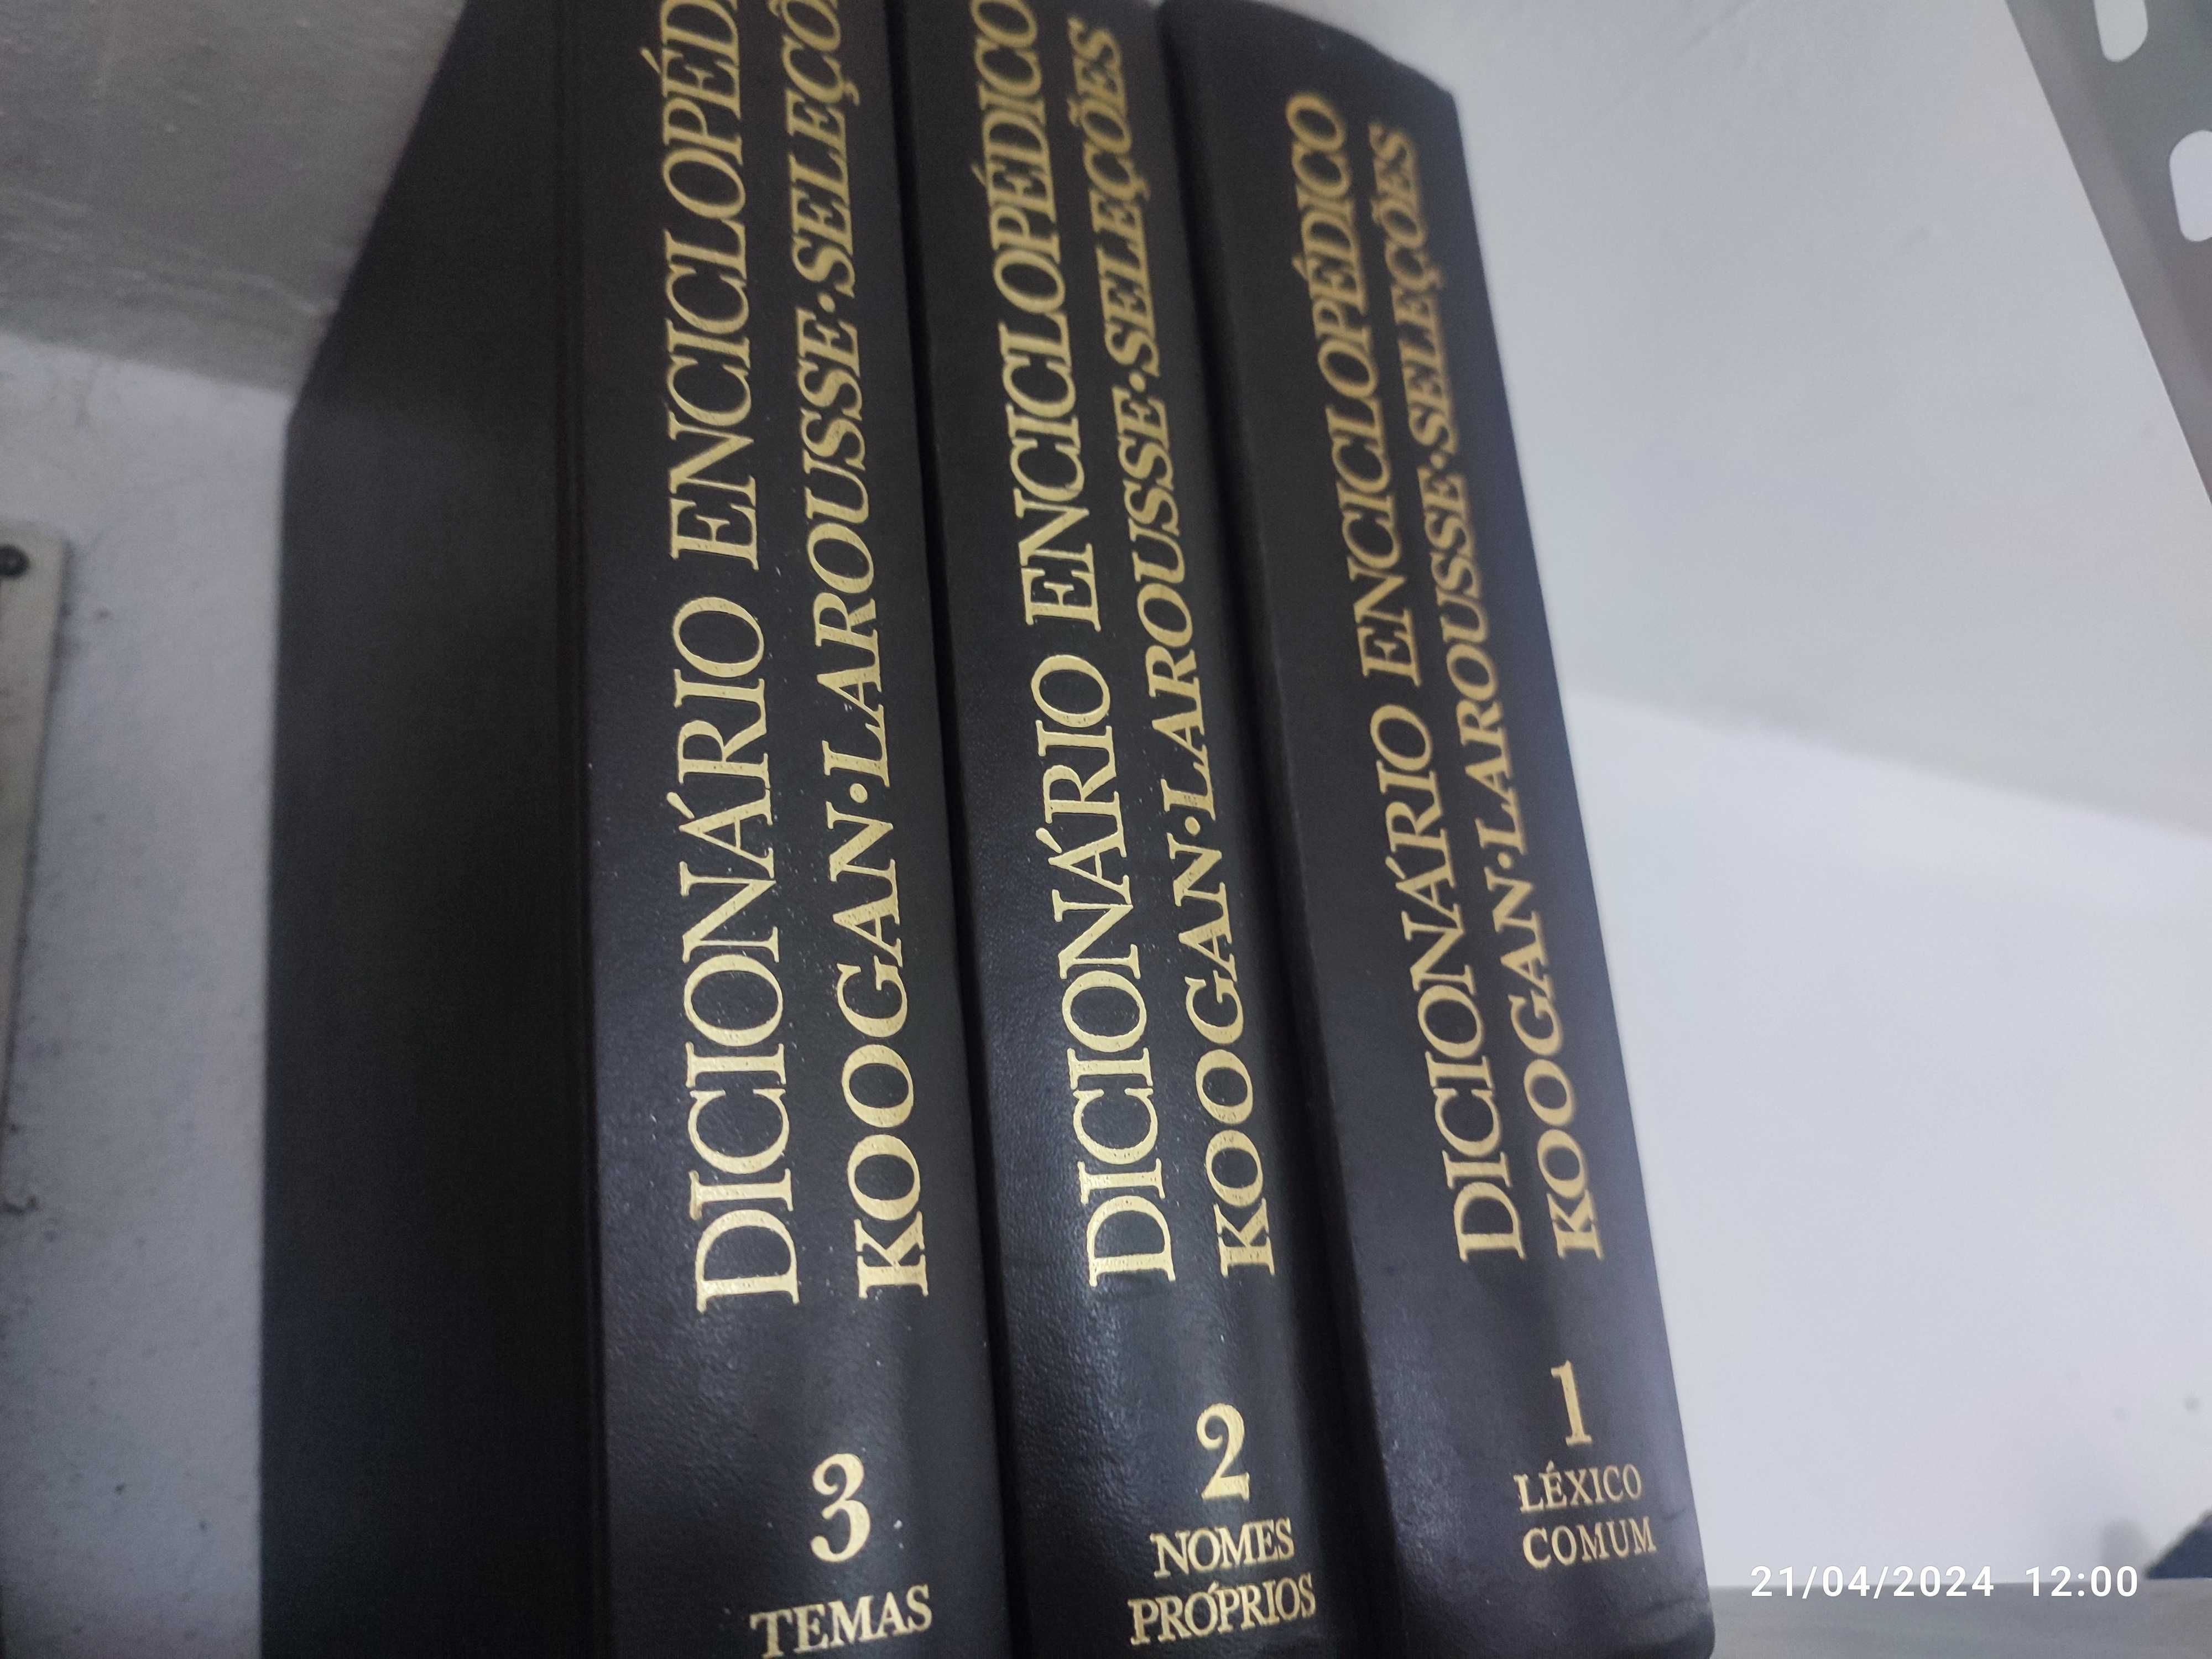 Dicionário Enciclopédico Koogan-Larousse